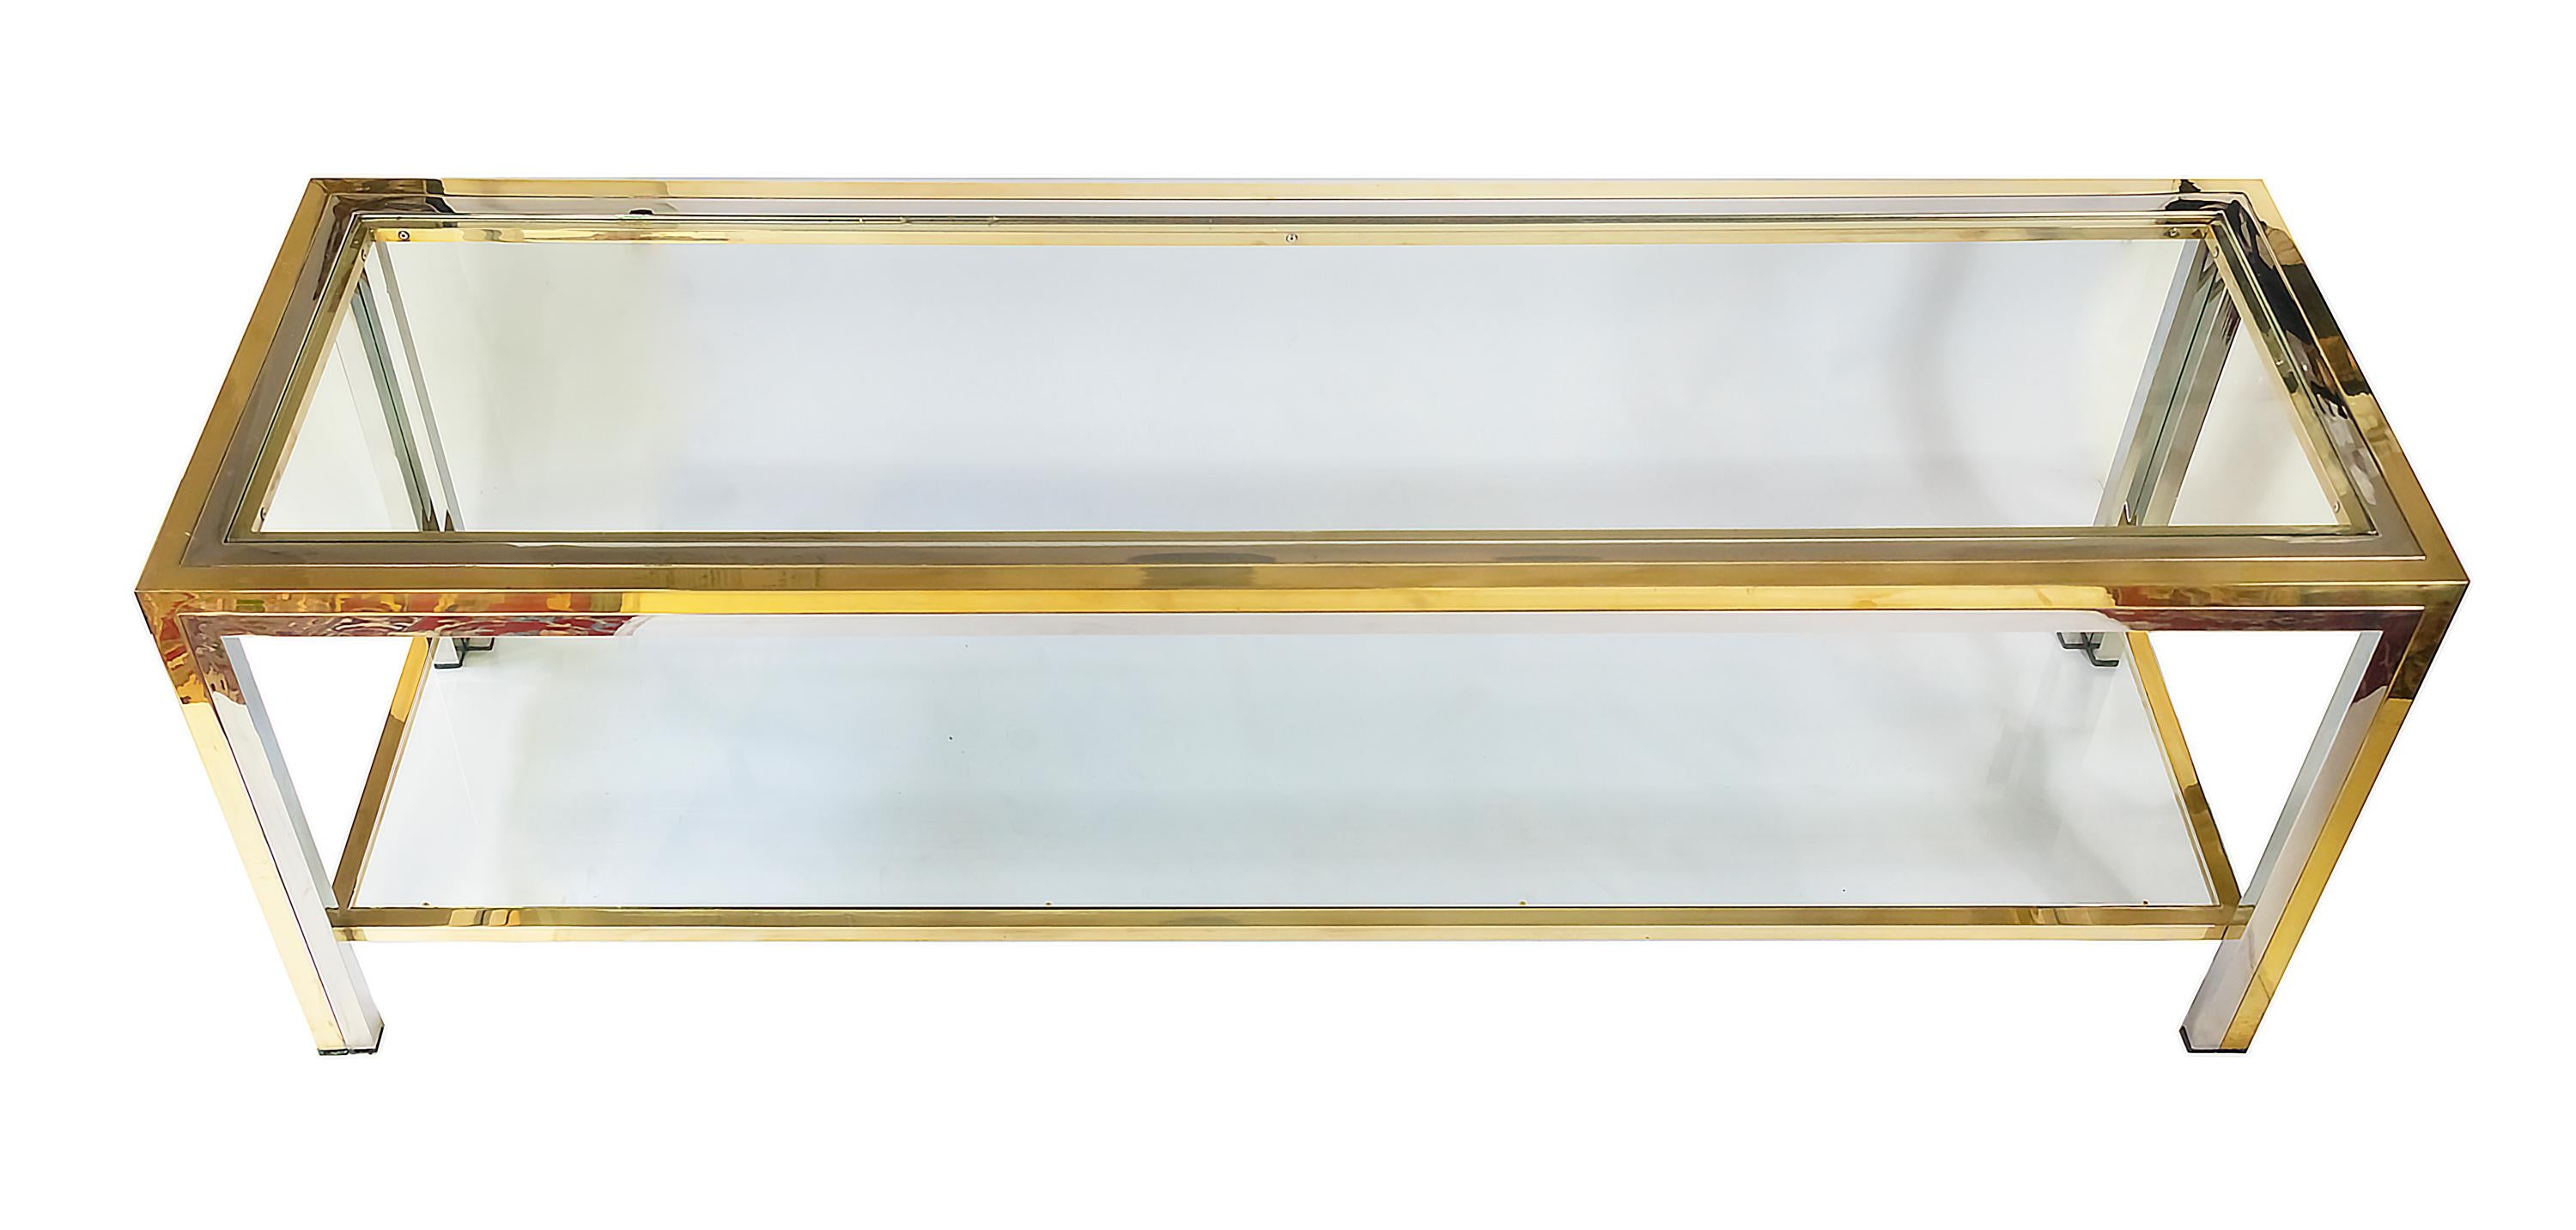 Console italienne basse du milieu du siècle en laiton, chrome et verre par Romeo Rega des années 1970.
Le plateau supérieur et le plateau inférieur de cette console sont en verre transparent.
